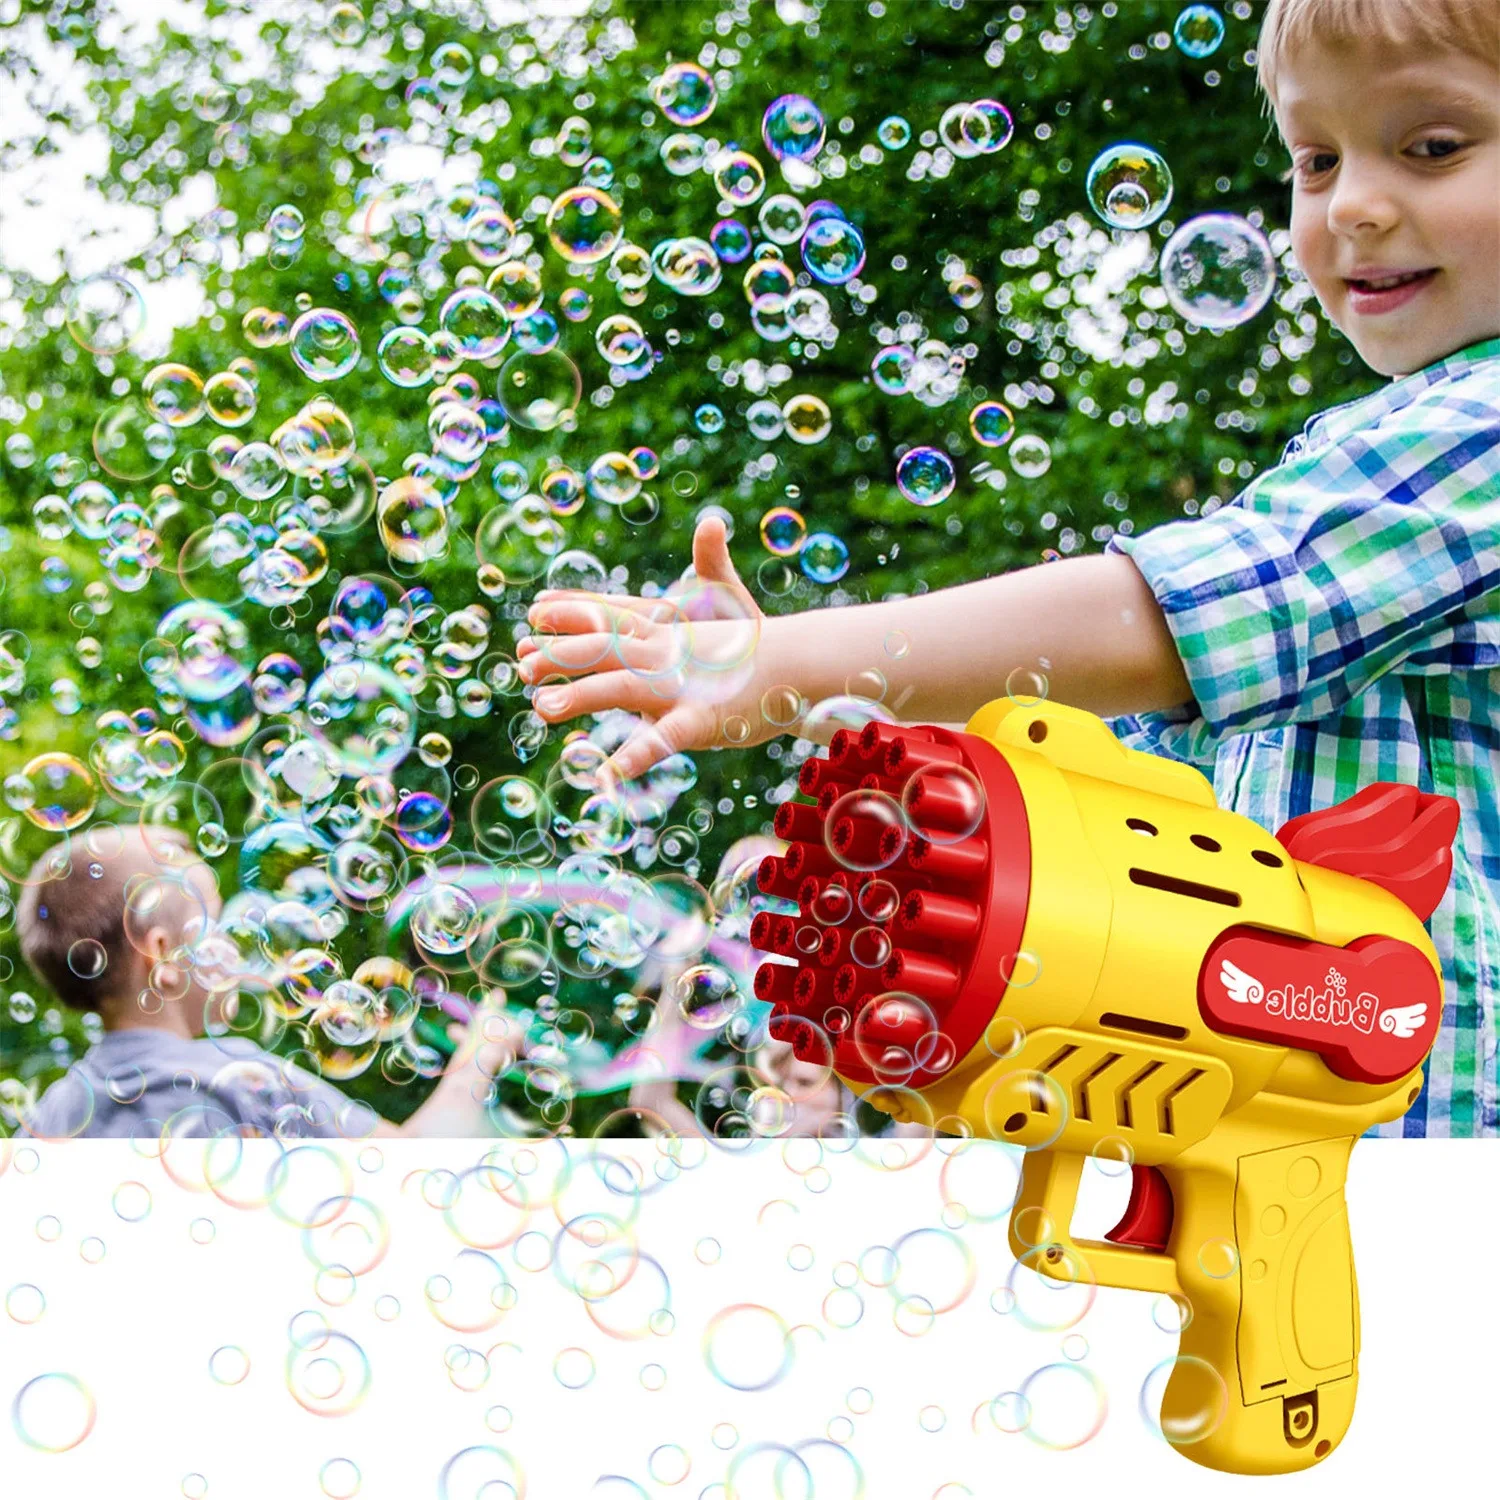 

Пузырчатая машина Rocket 29, автоматическая машина для мыльных пузырей, уличная игрушка для детей, популярная Экологичная пузырчатая машина Bellenblaa